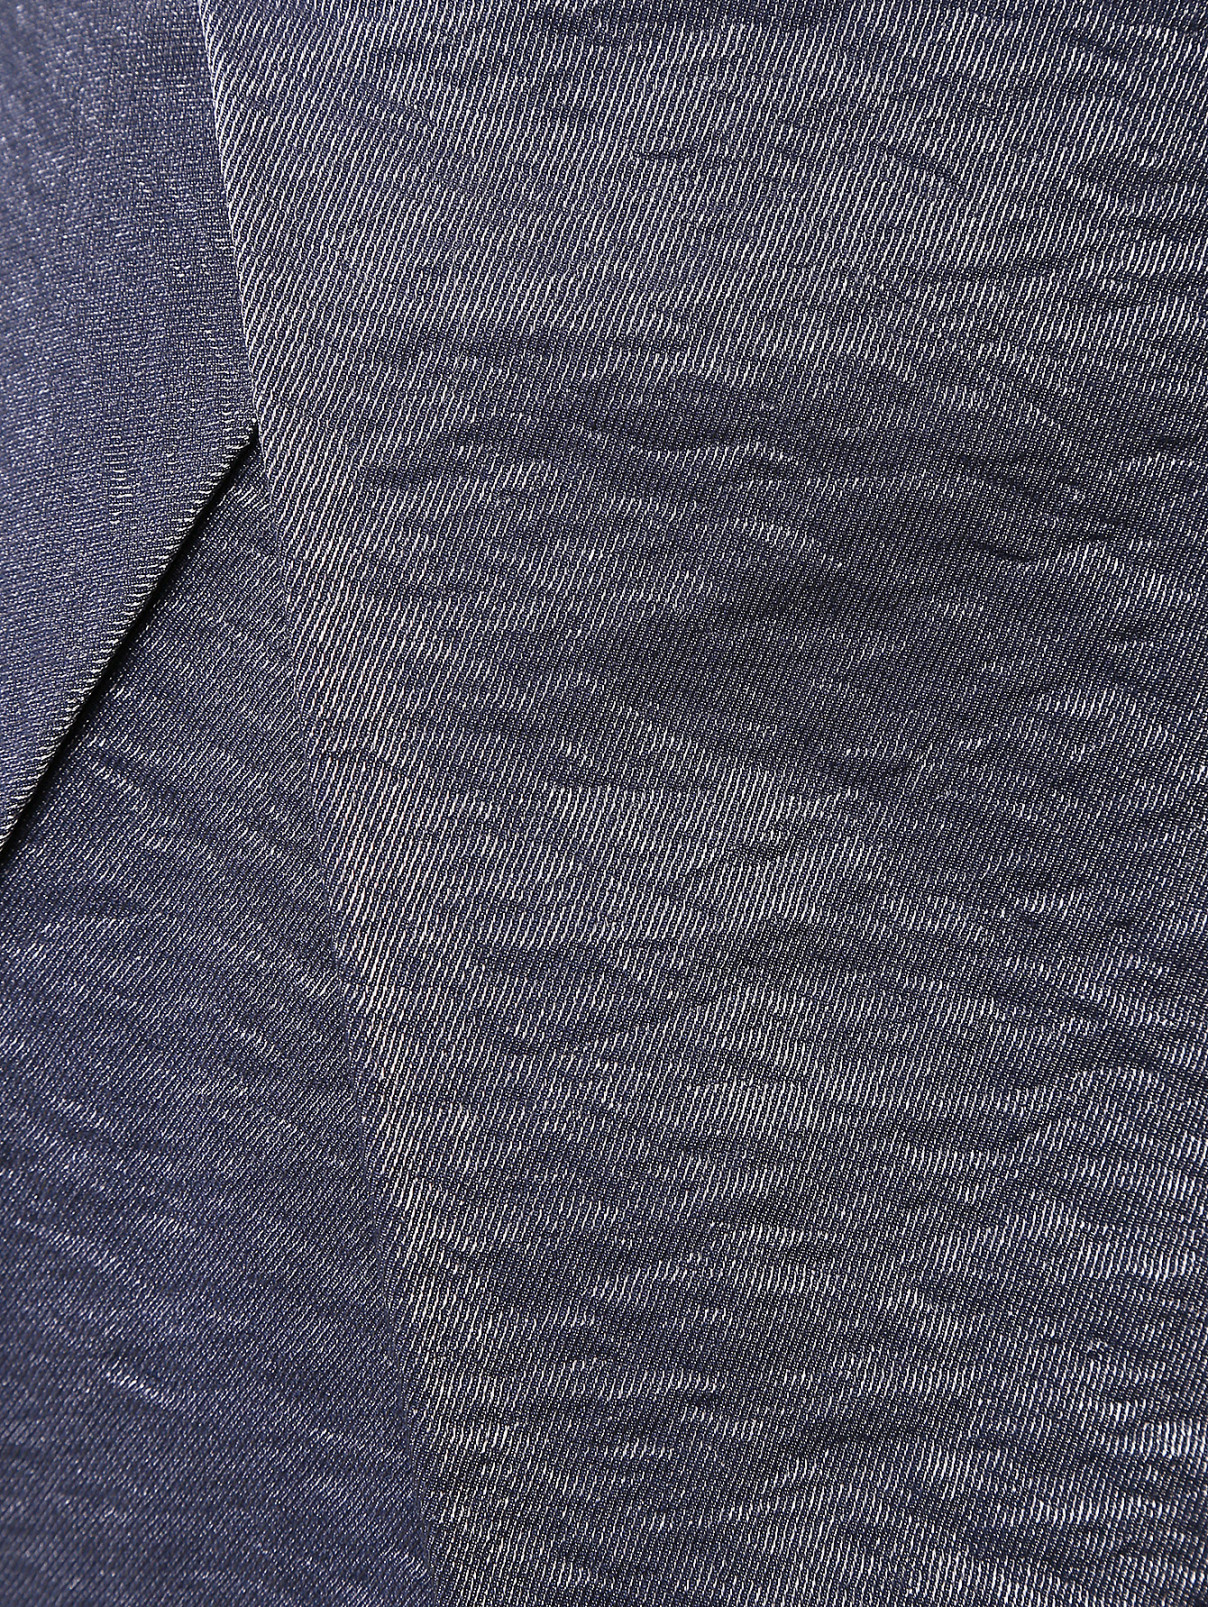 Мини-юбка архитектурного кроя Vivienne Westwood  –  Деталь  – Цвет:  Серый